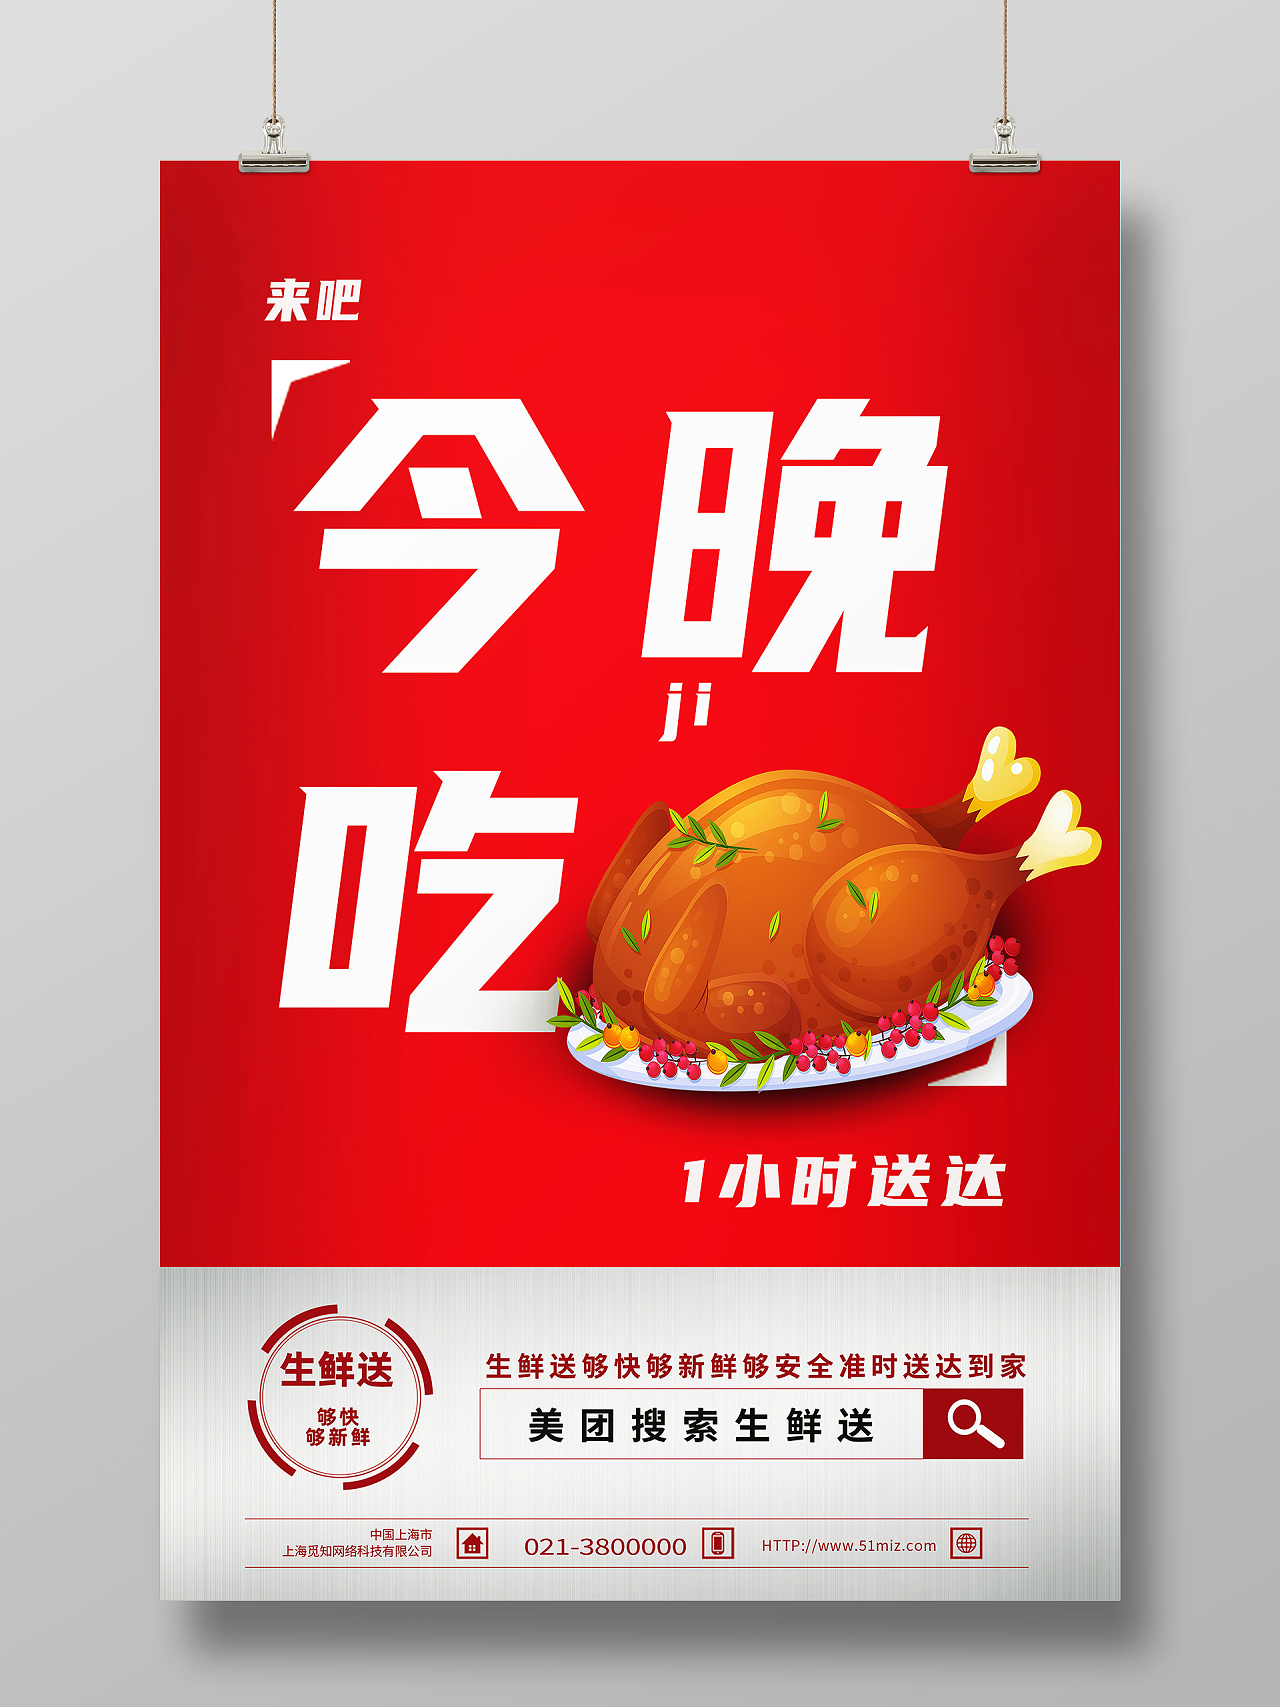 红色简约今晚吃鸡传统美食烧鸡海报